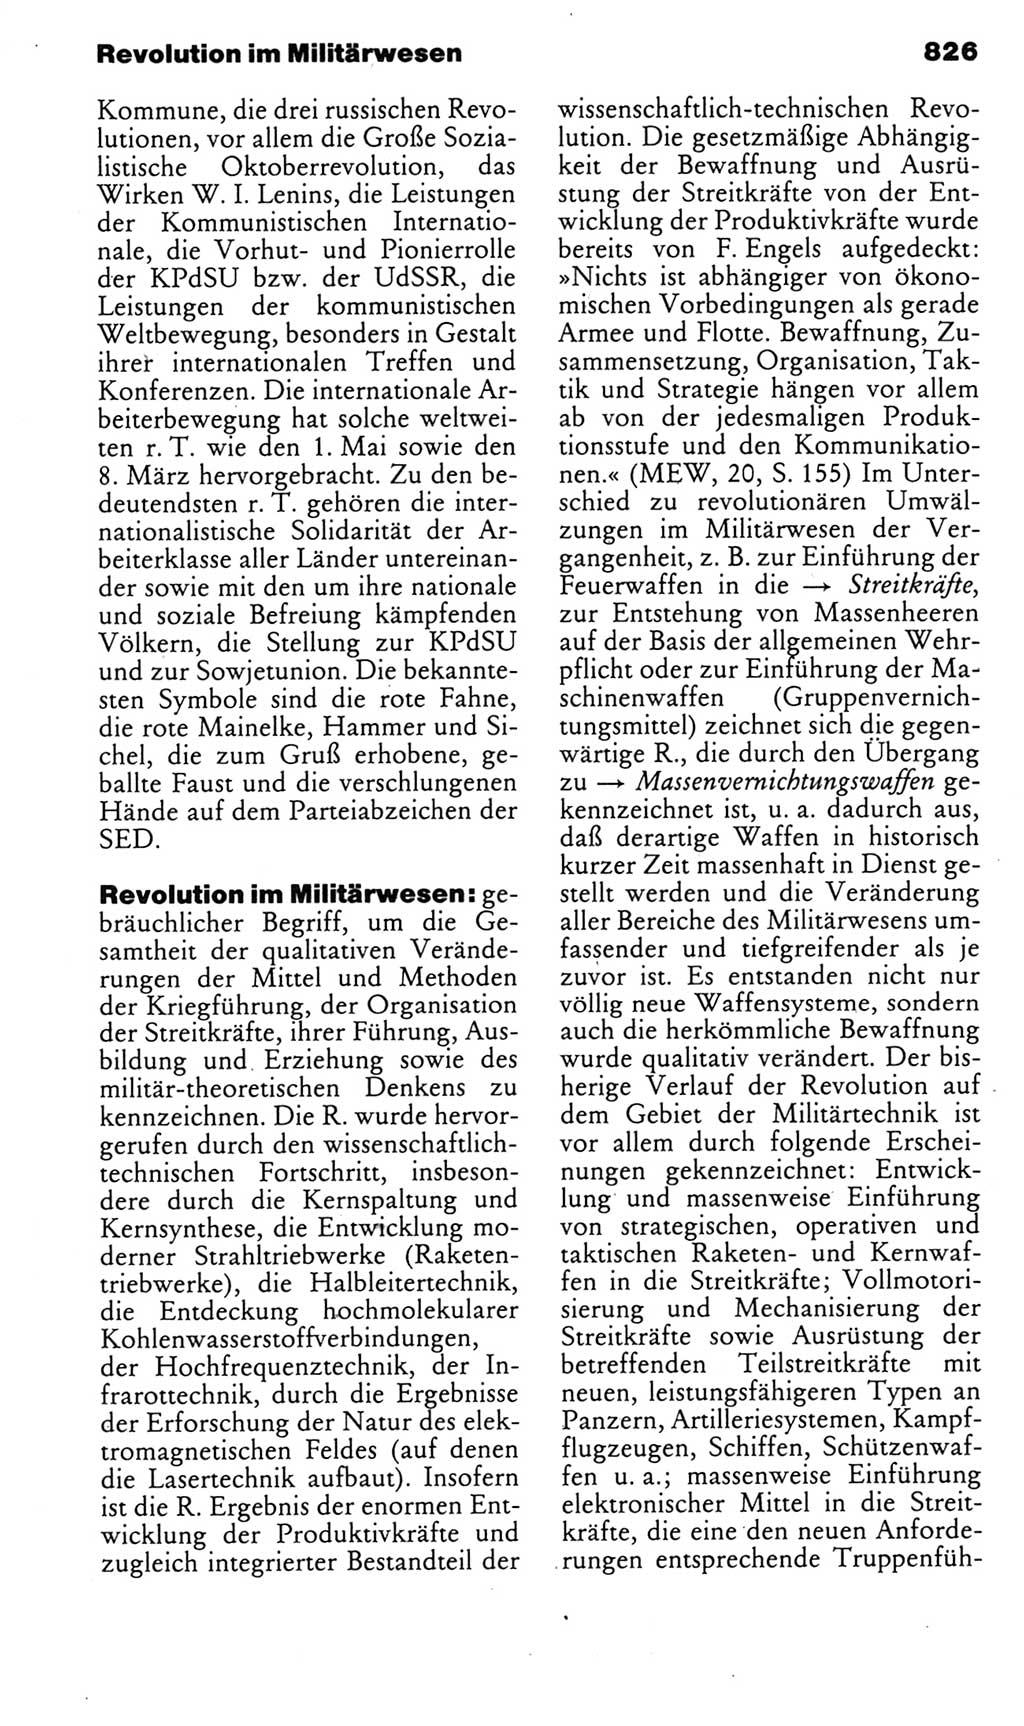 Kleines politisches Wörterbuch [Deutsche Demokratische Republik (DDR)] 1985, Seite 826 (Kl. pol. Wb. DDR 1985, S. 826)